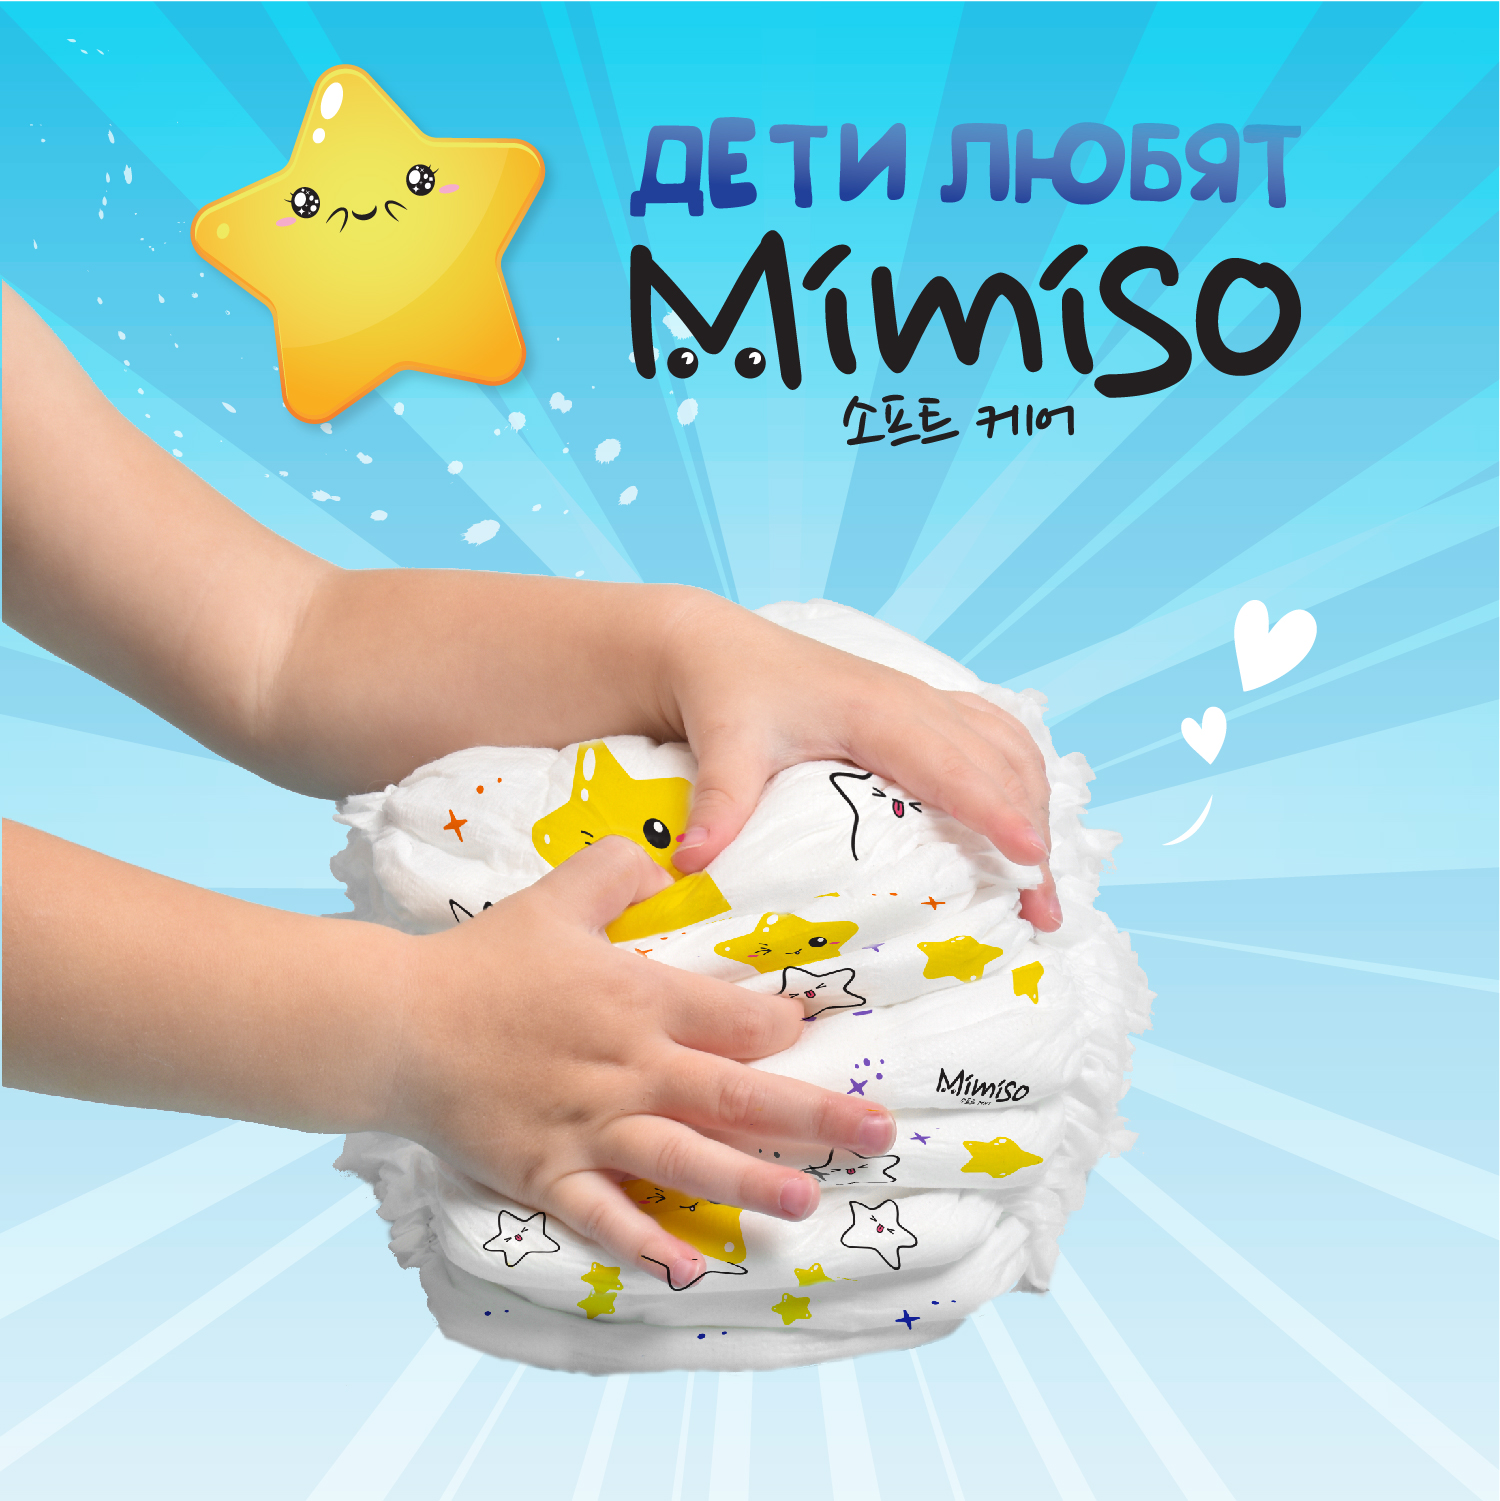 Трусики Mimiso одноразовые для детей 4/L 9-14 кг mega-pack 84шт - фото 5